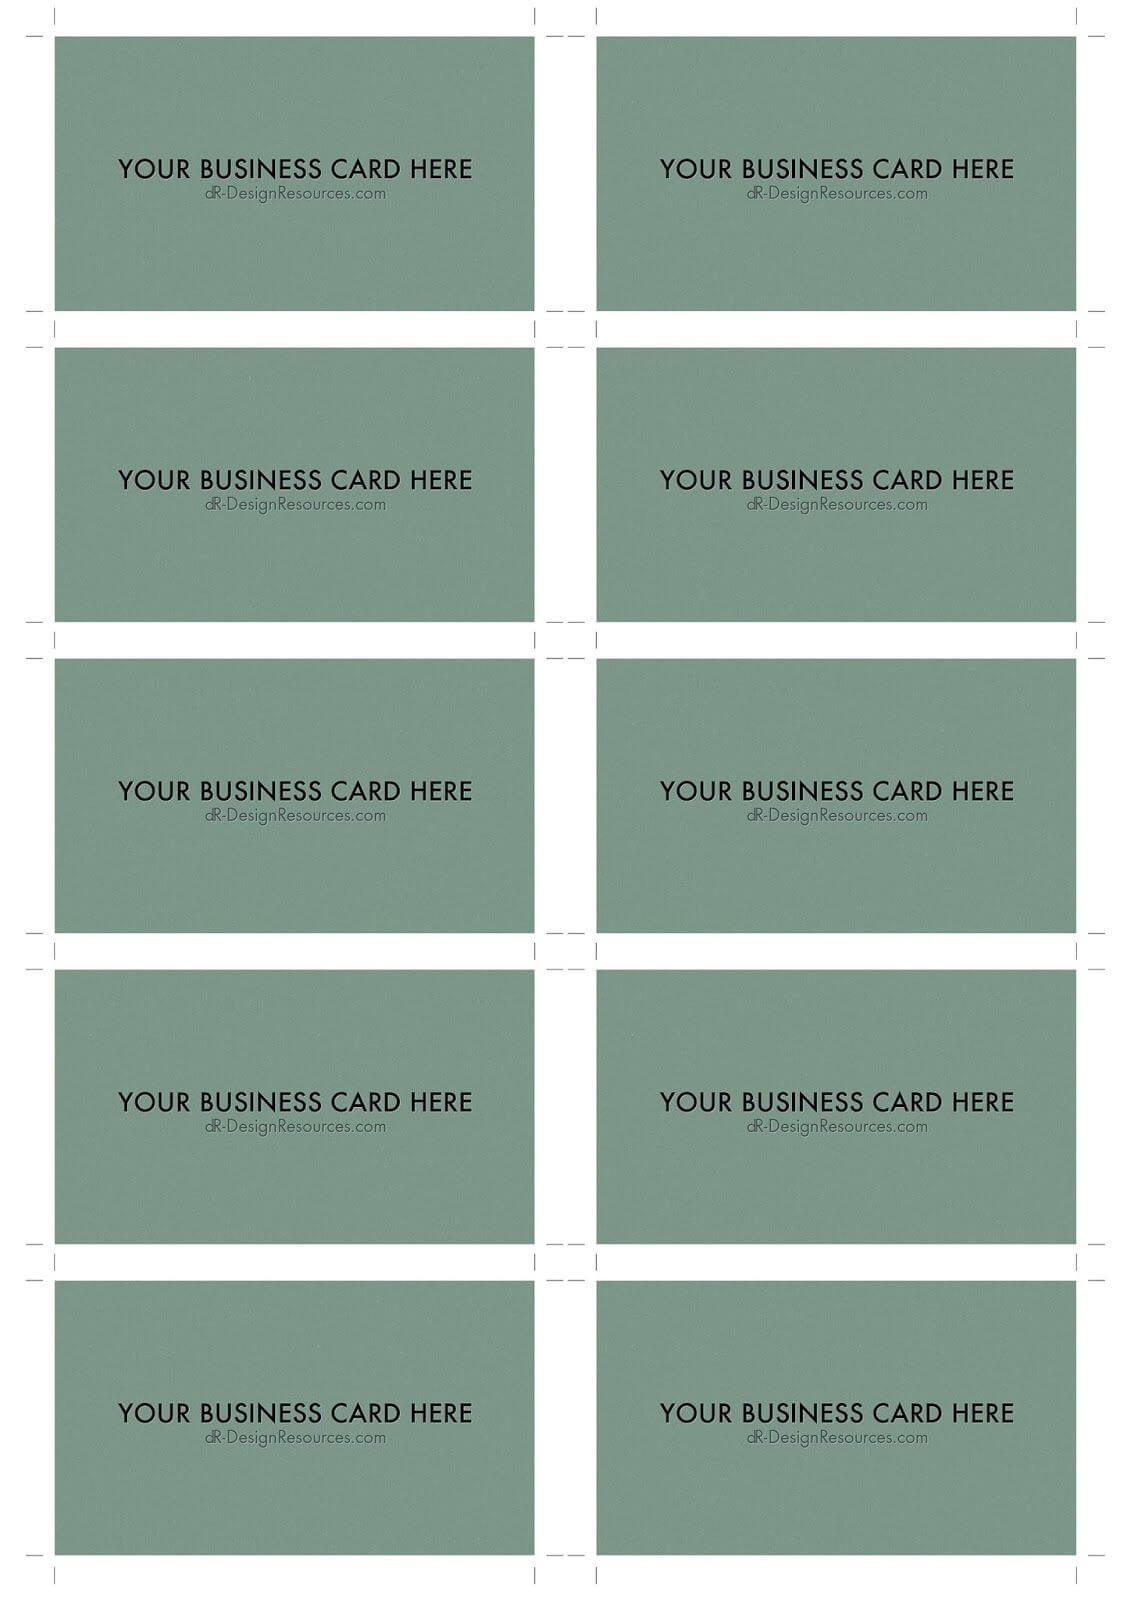 A4 Business Card Template Psd (10 Per Sheet) | Business Card Within Photoshop Cs6 Business Card Template